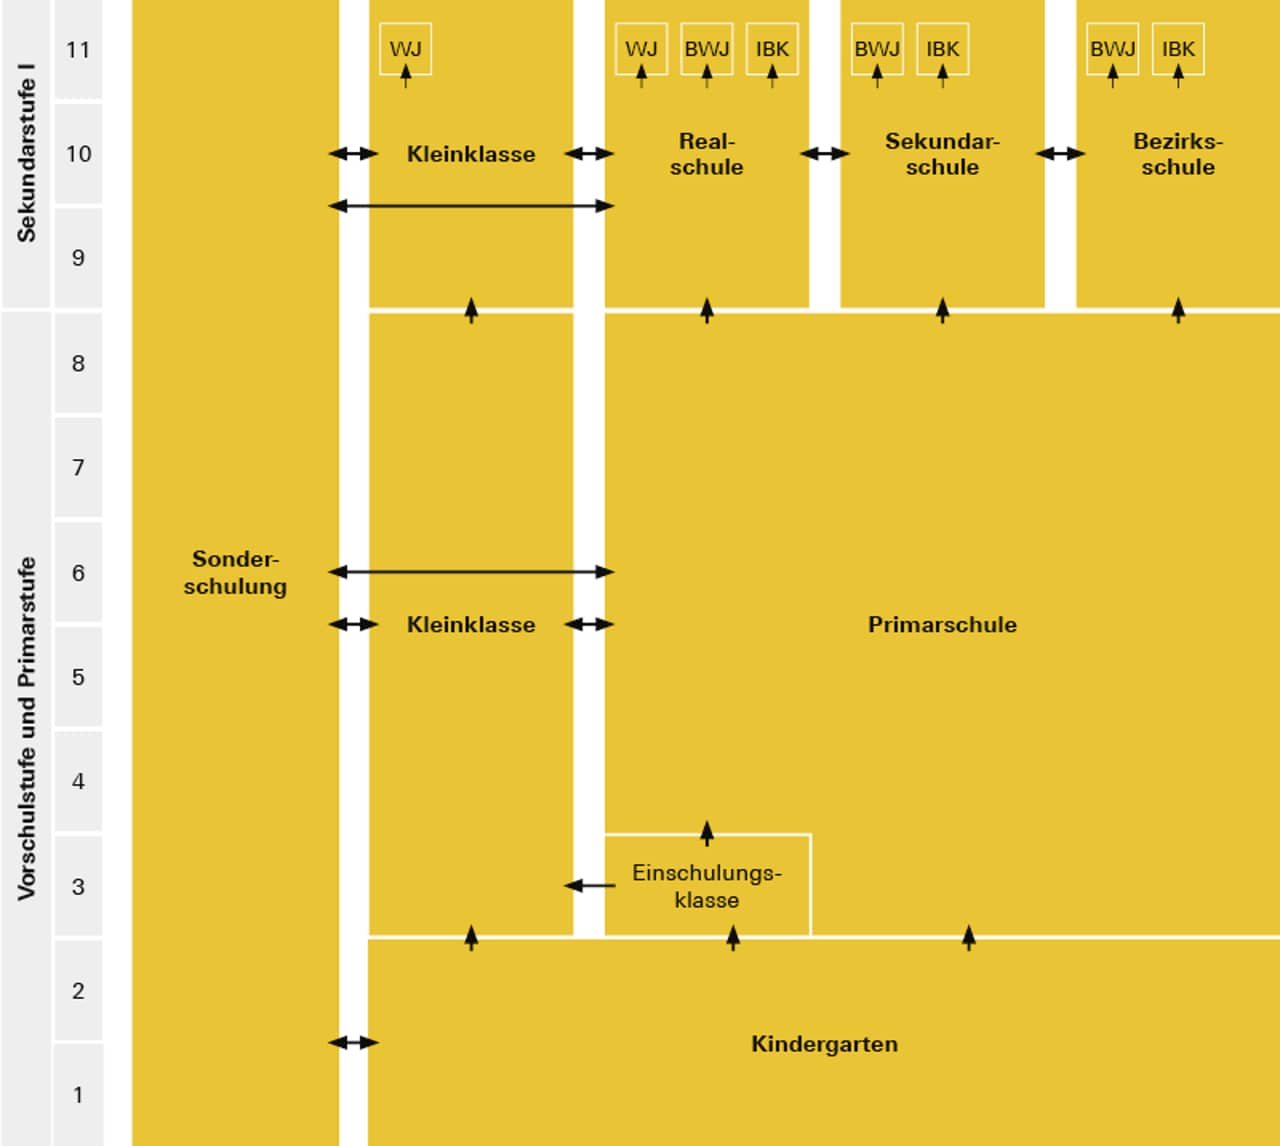 Darstellung der Struktur der Volksschule im Kanton Aargau. Informationen zu den einzelnen Stufen erhalten Sie beim Anklicken der Elemente.